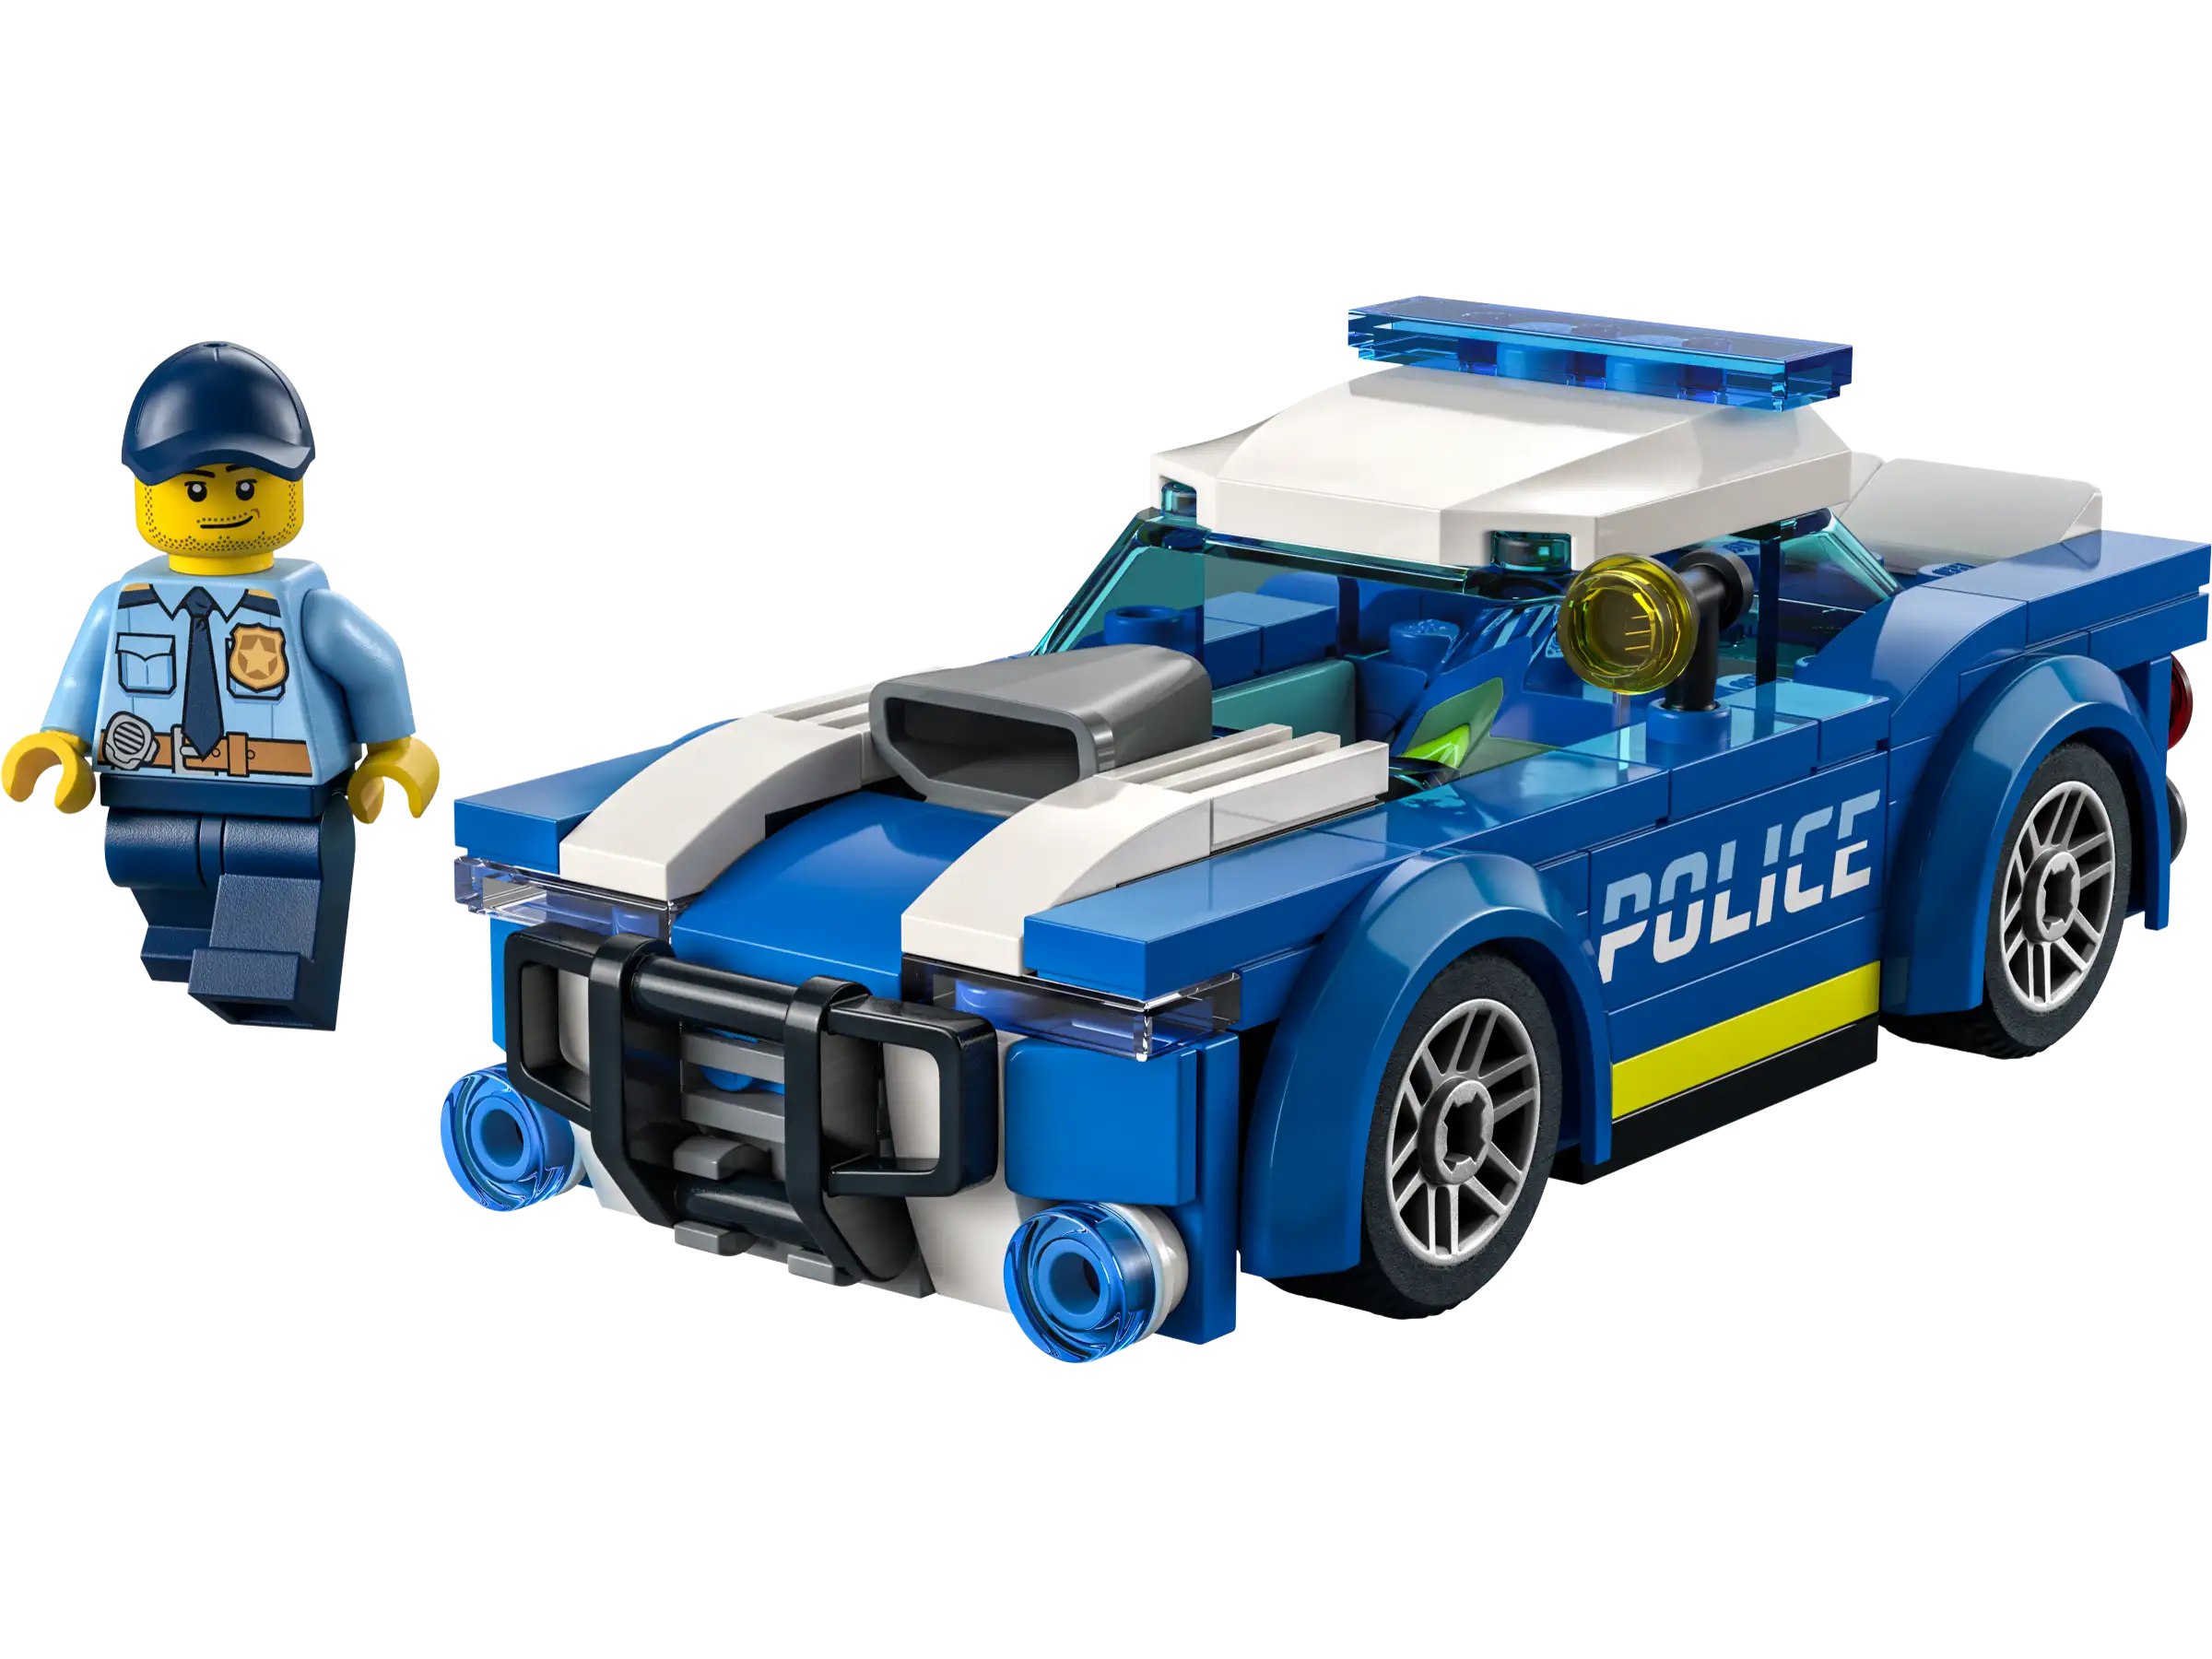 Lego - The police car